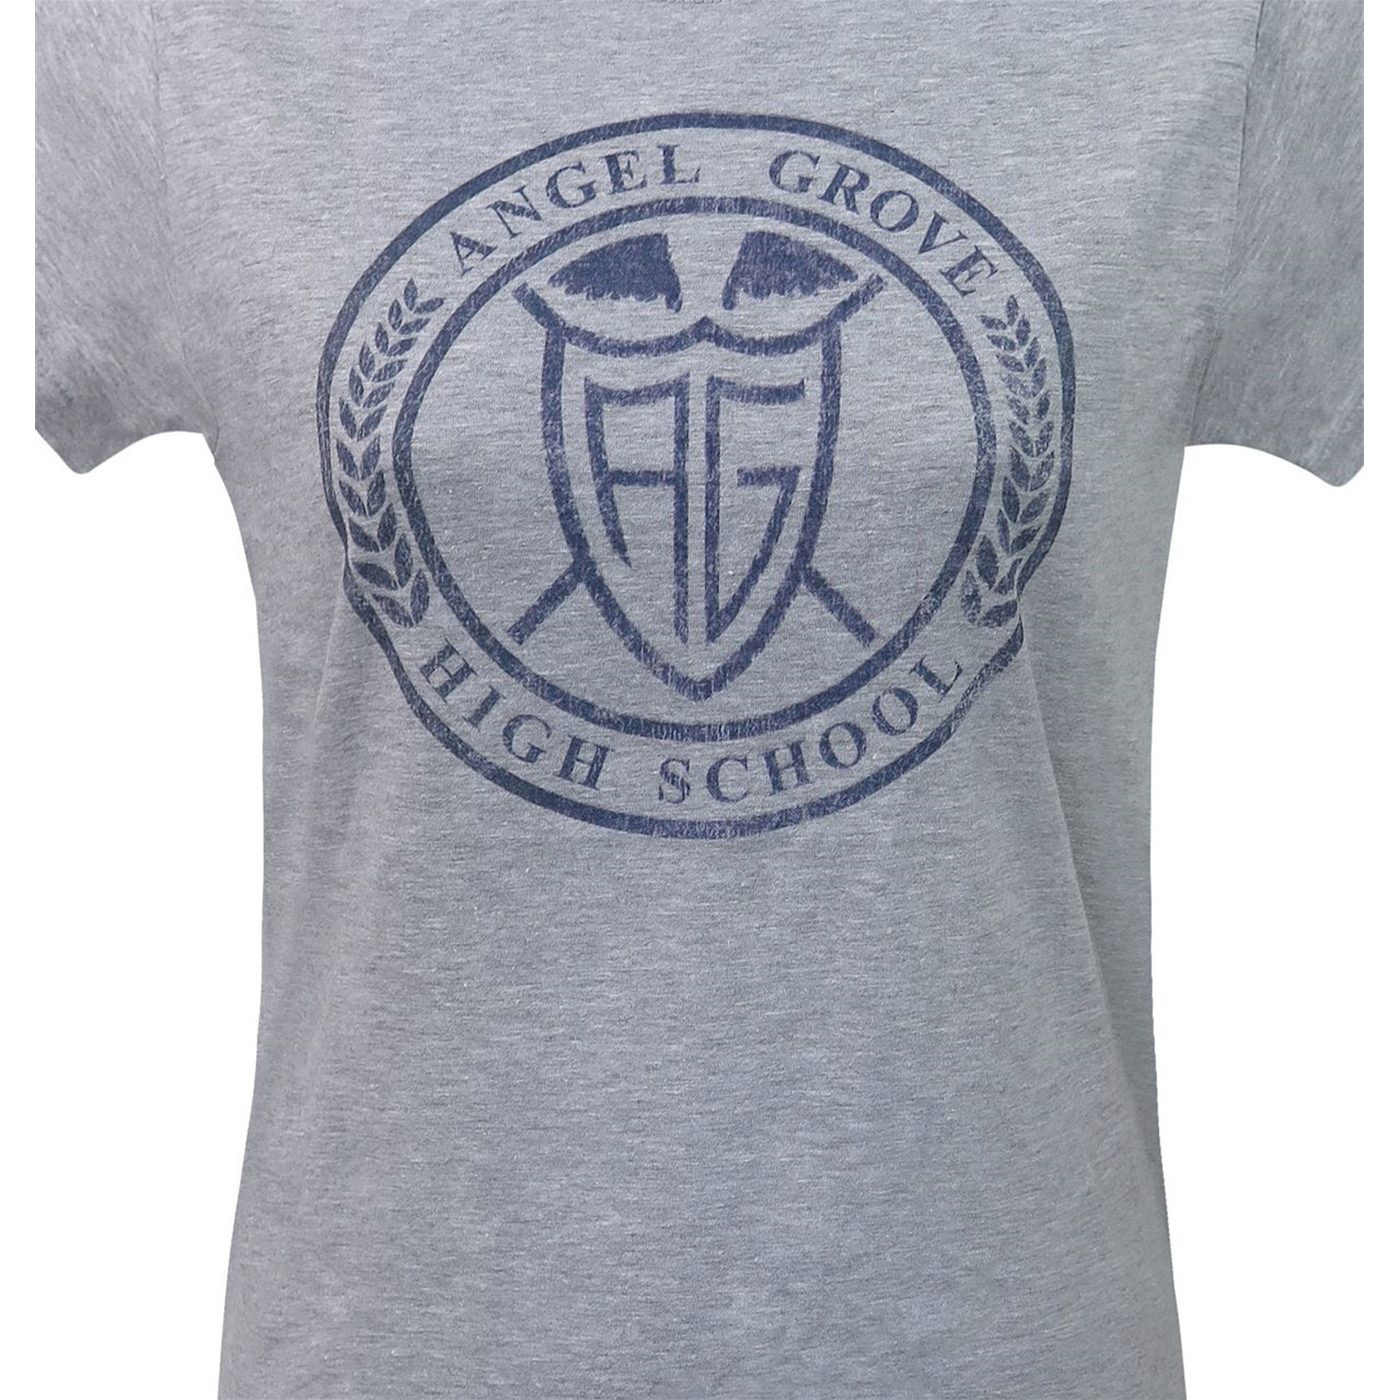 Power Rangers Angel Grove High Women's T-Shirt